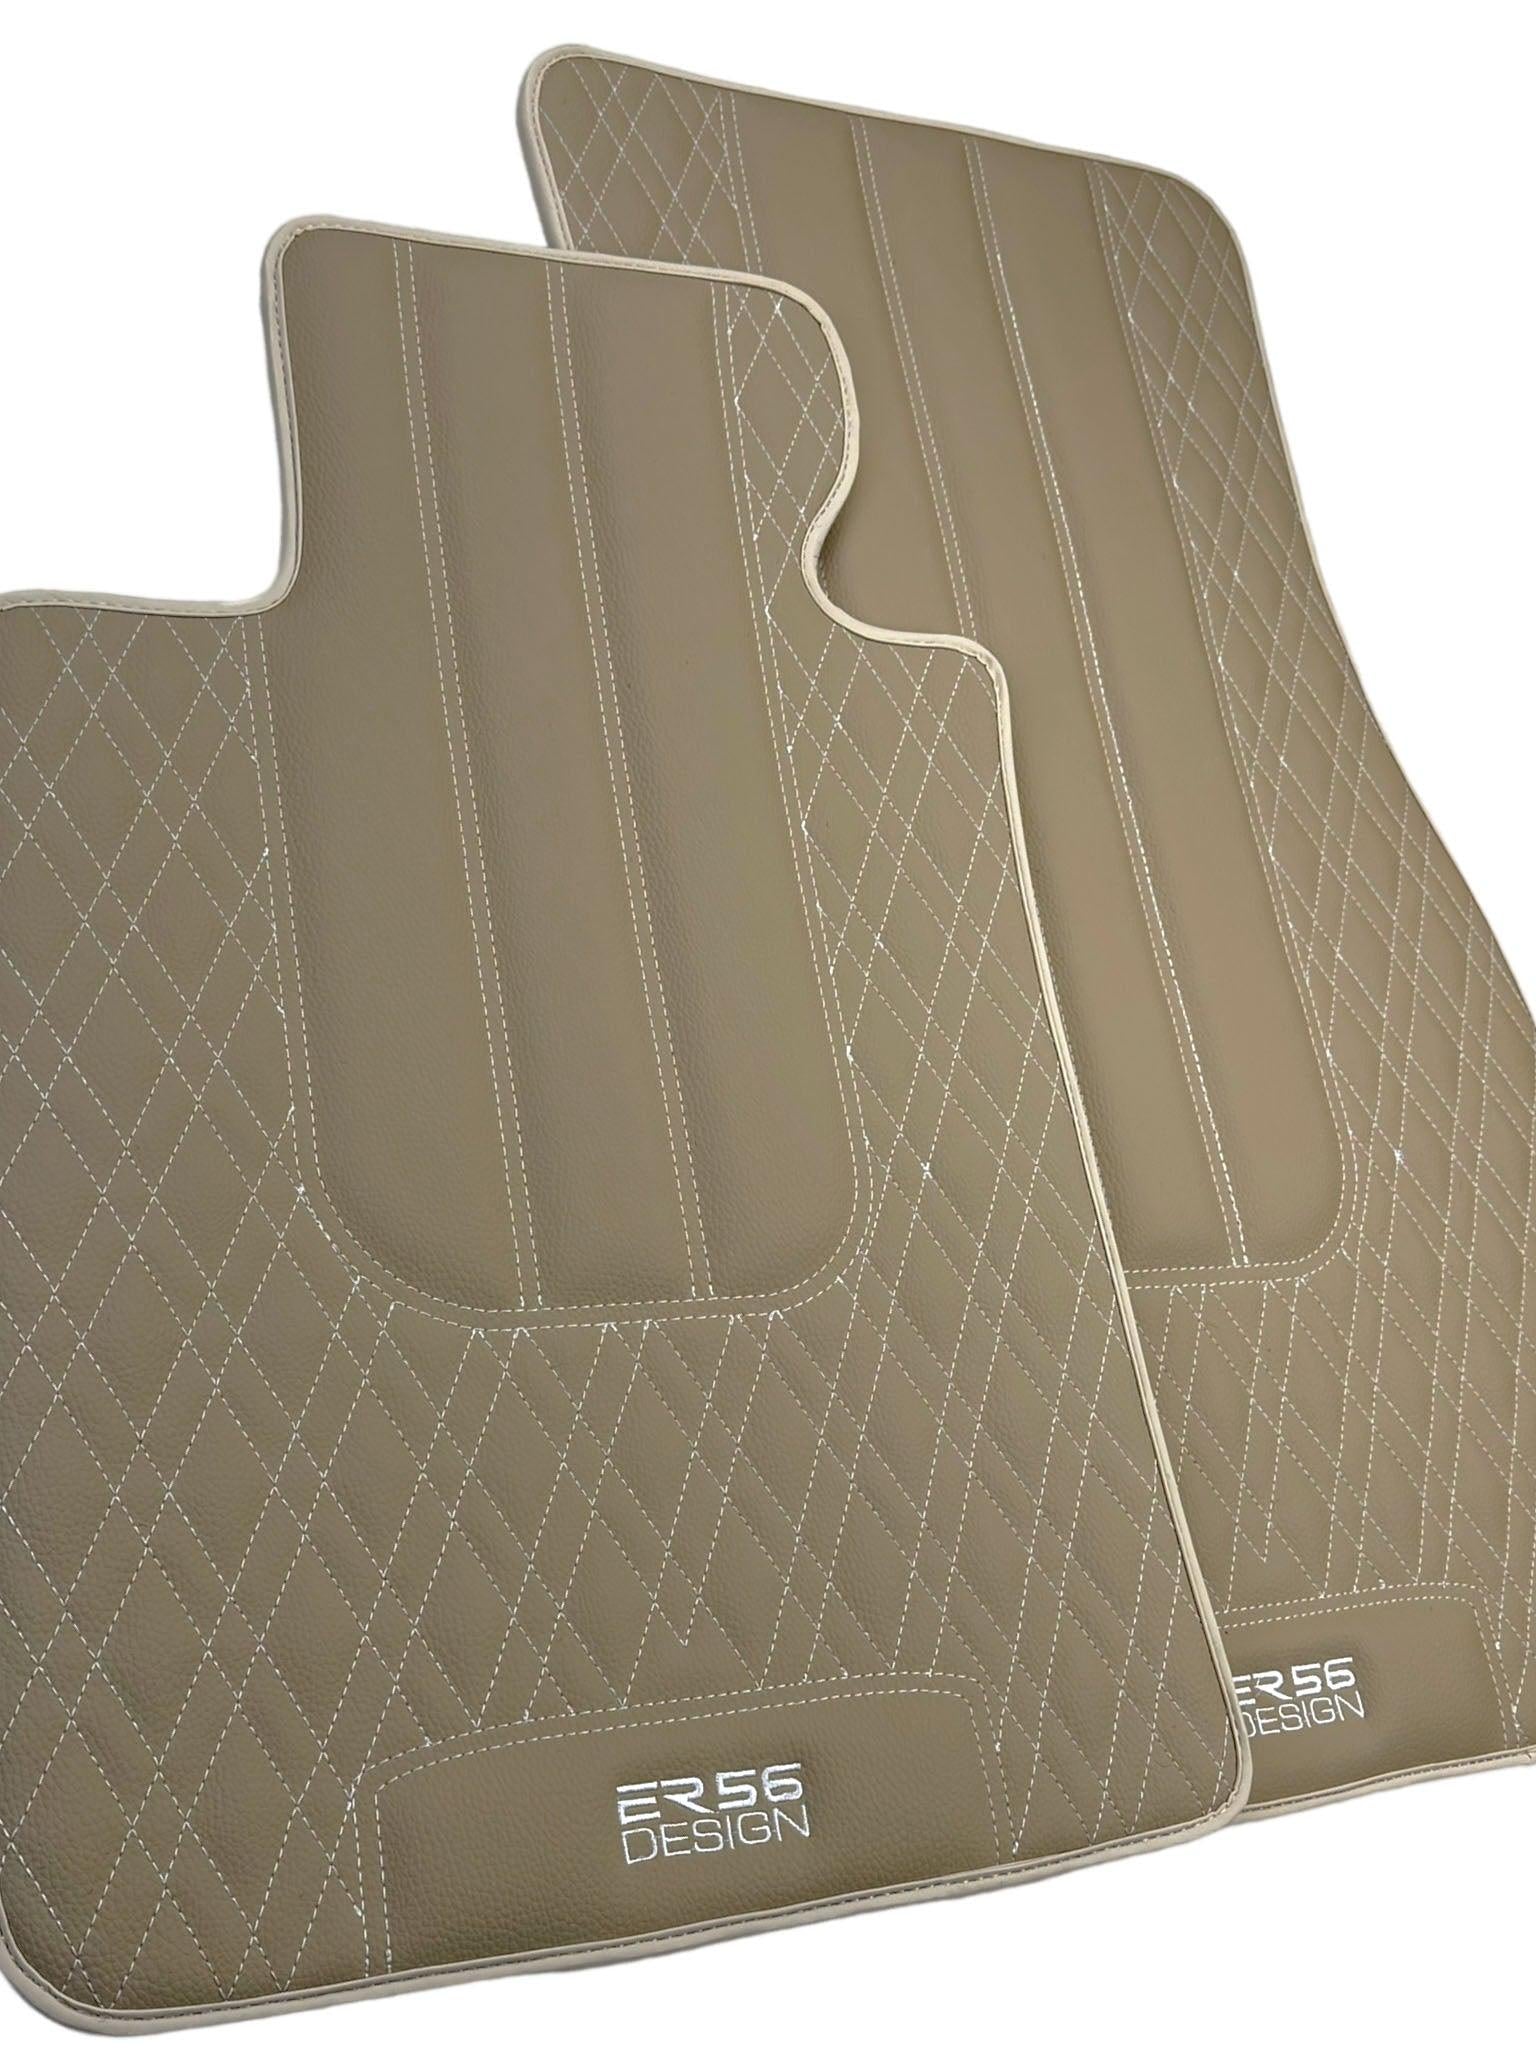 Beige Leather Floor Floor Mats For BMW 1 Series F20